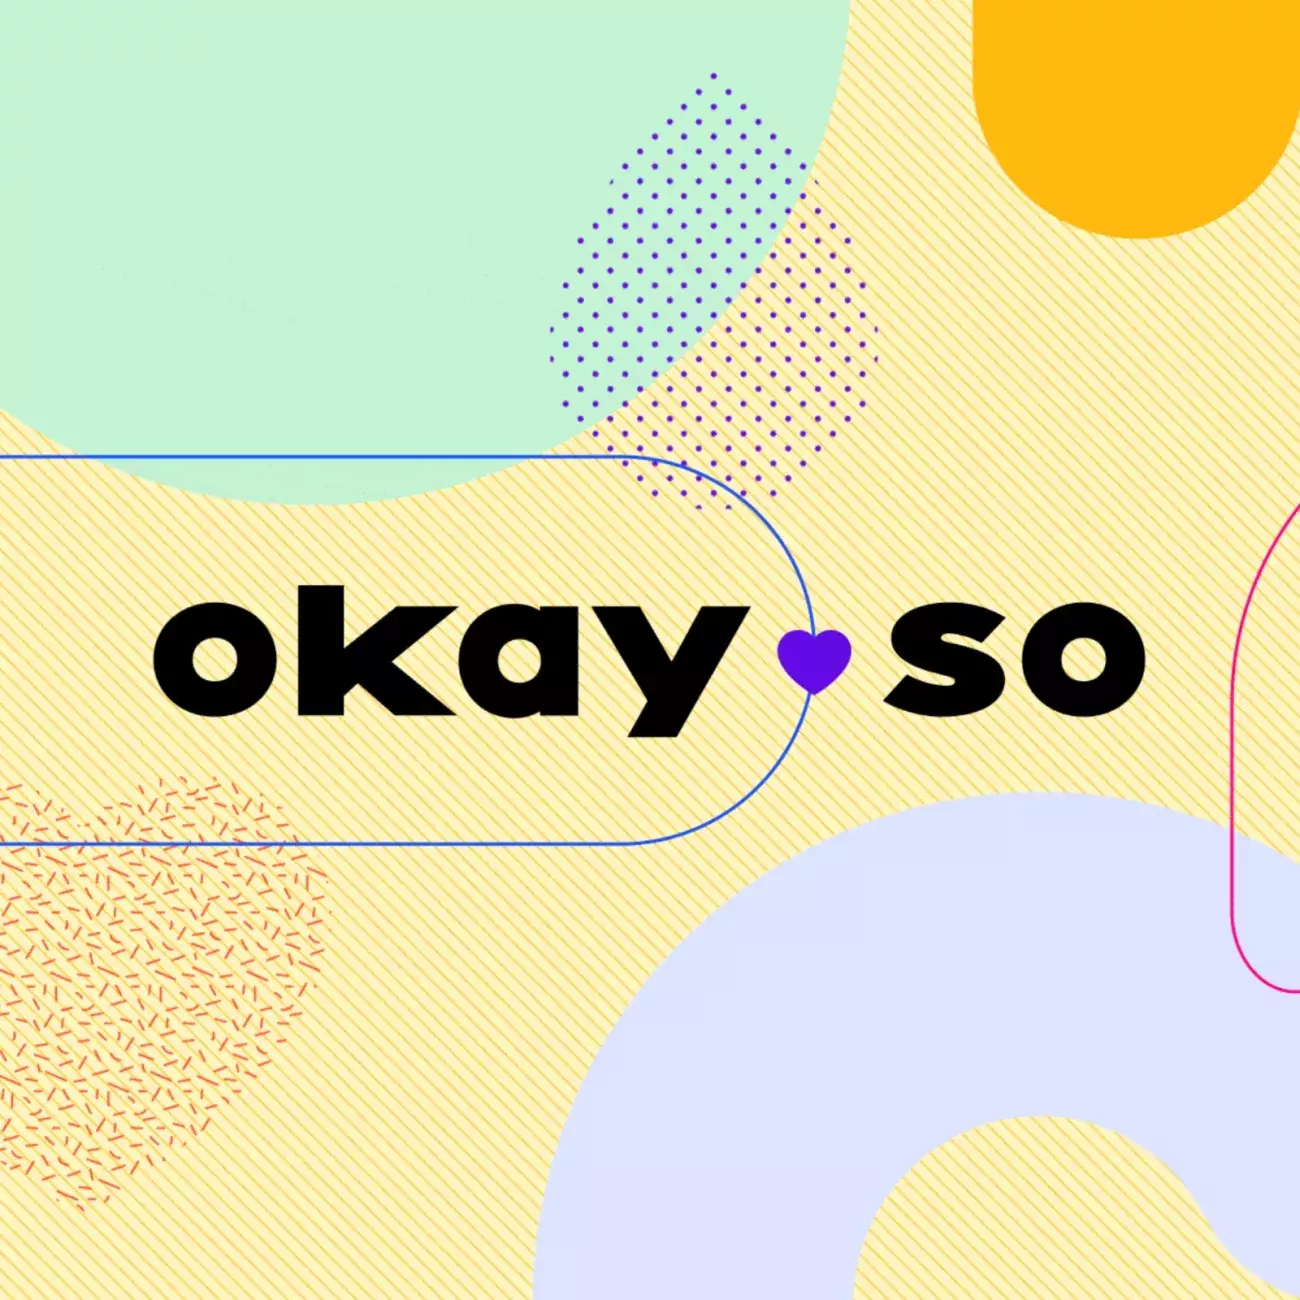 Branding for okay an online platform for Gen Z